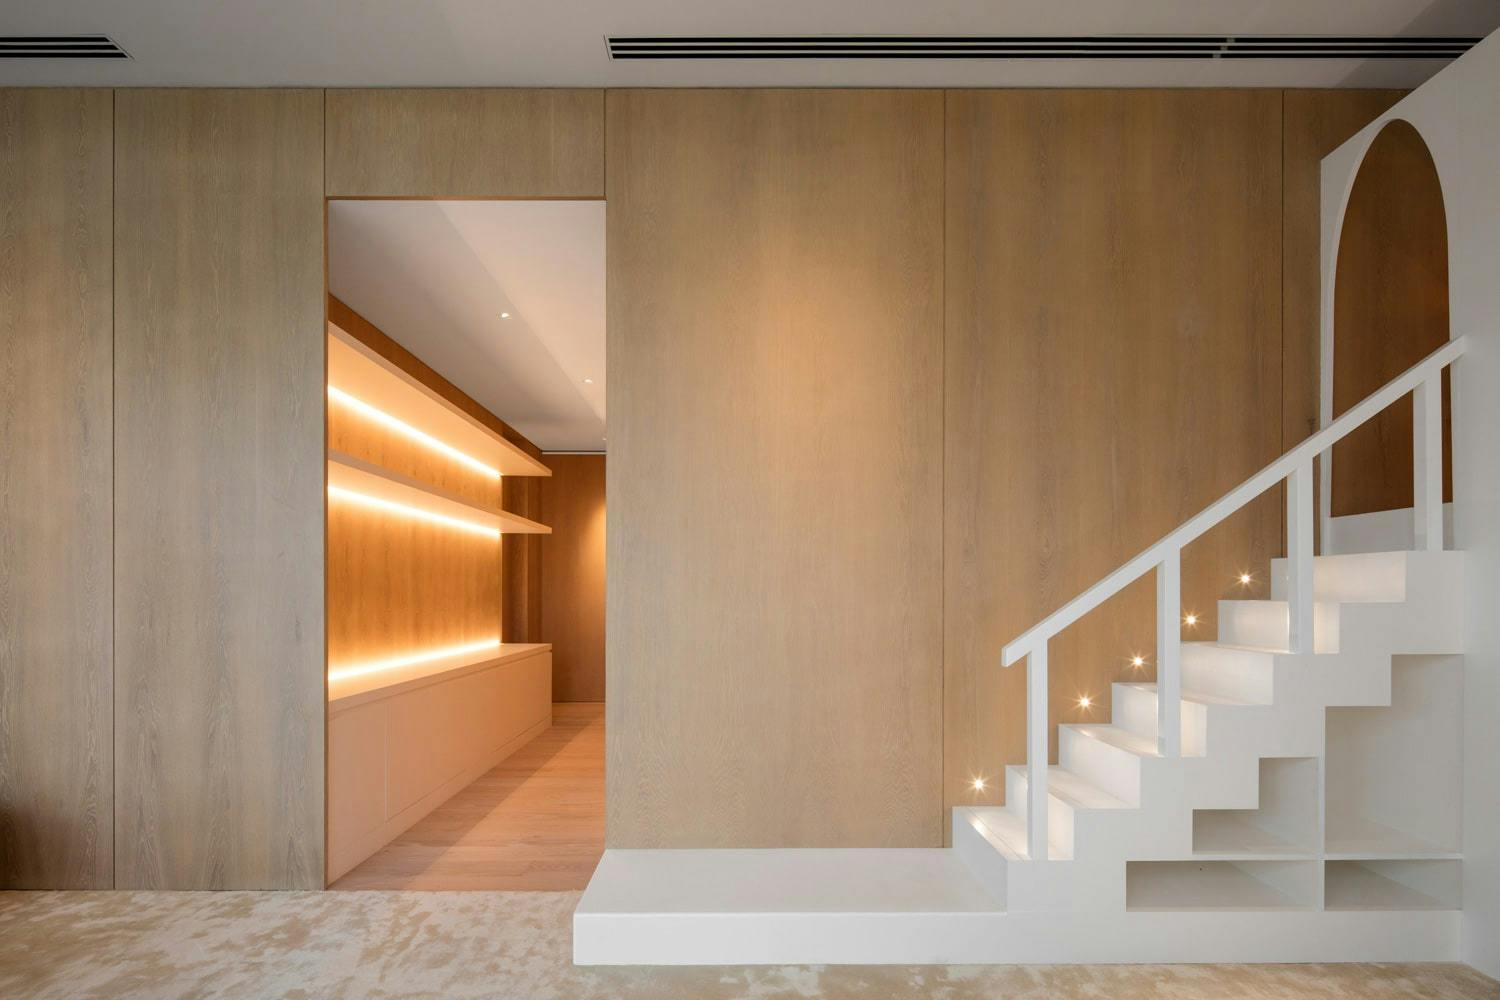 Imagem número 43 da actual secção de Um projeto de design de interiores premiado concluído com Dekton Kelya da Cosentino Portugal